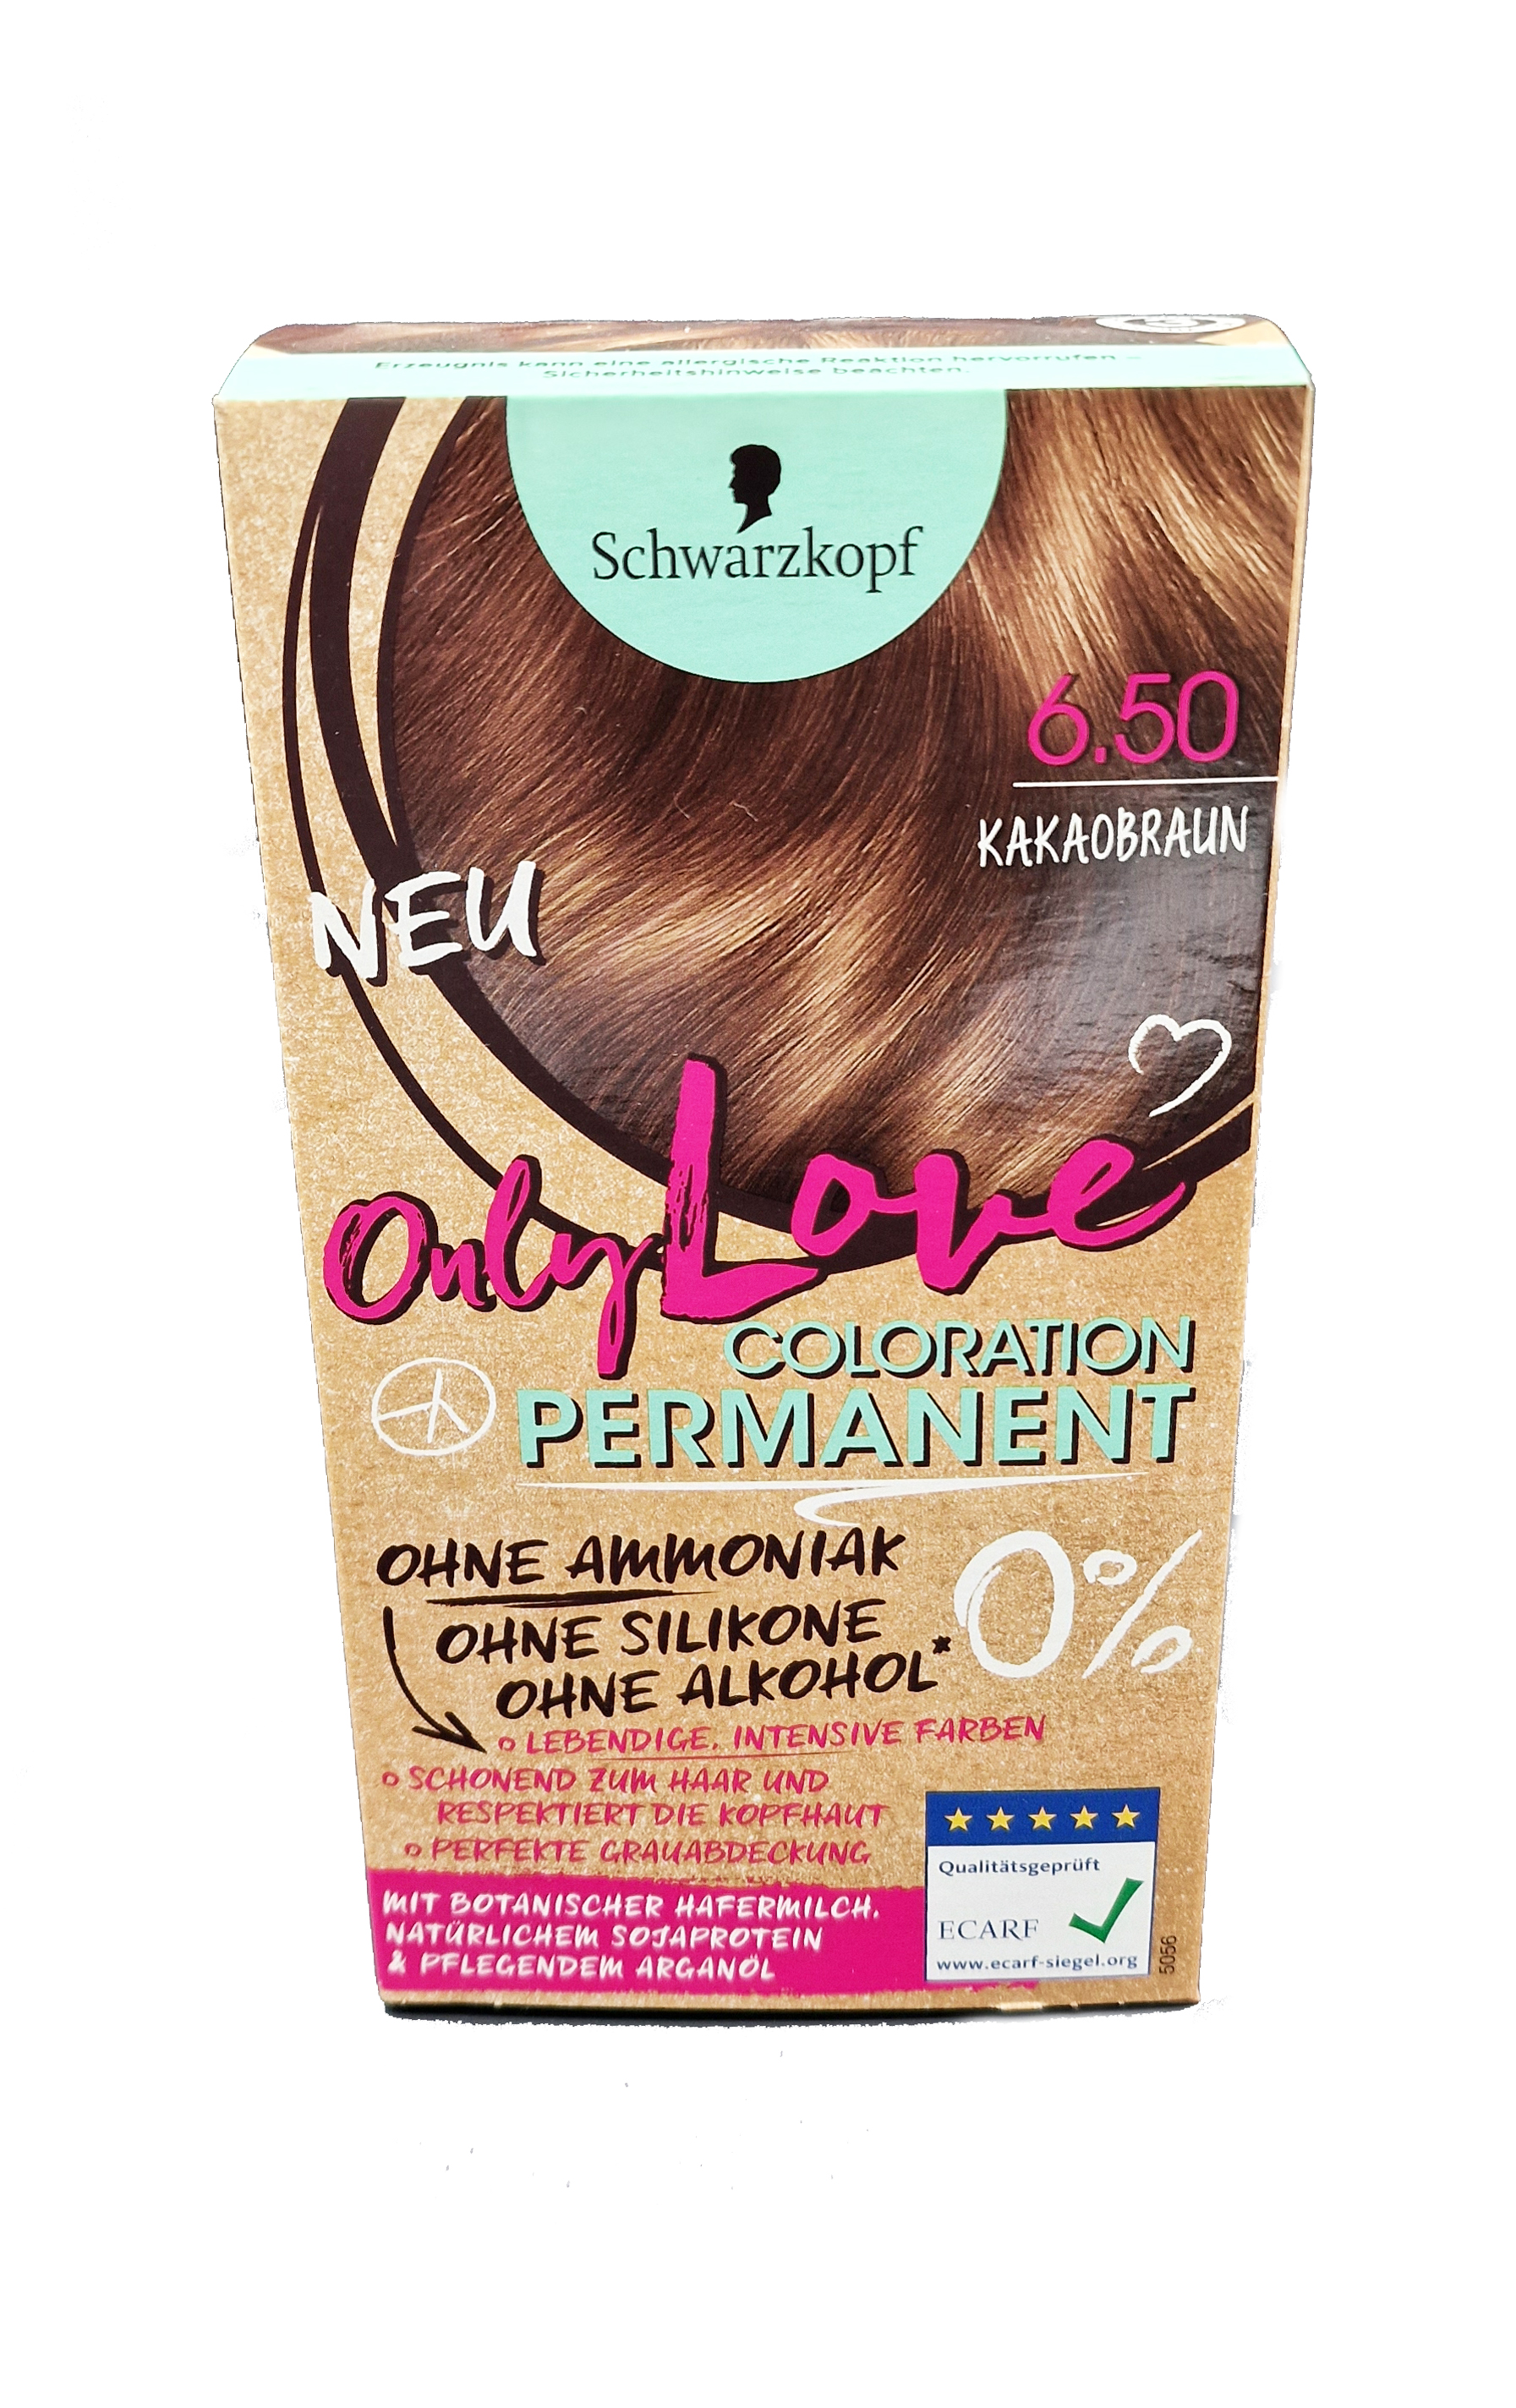 Schwarzkopf Only Love Haarfarbe 0% 6.50 Kakaobraun